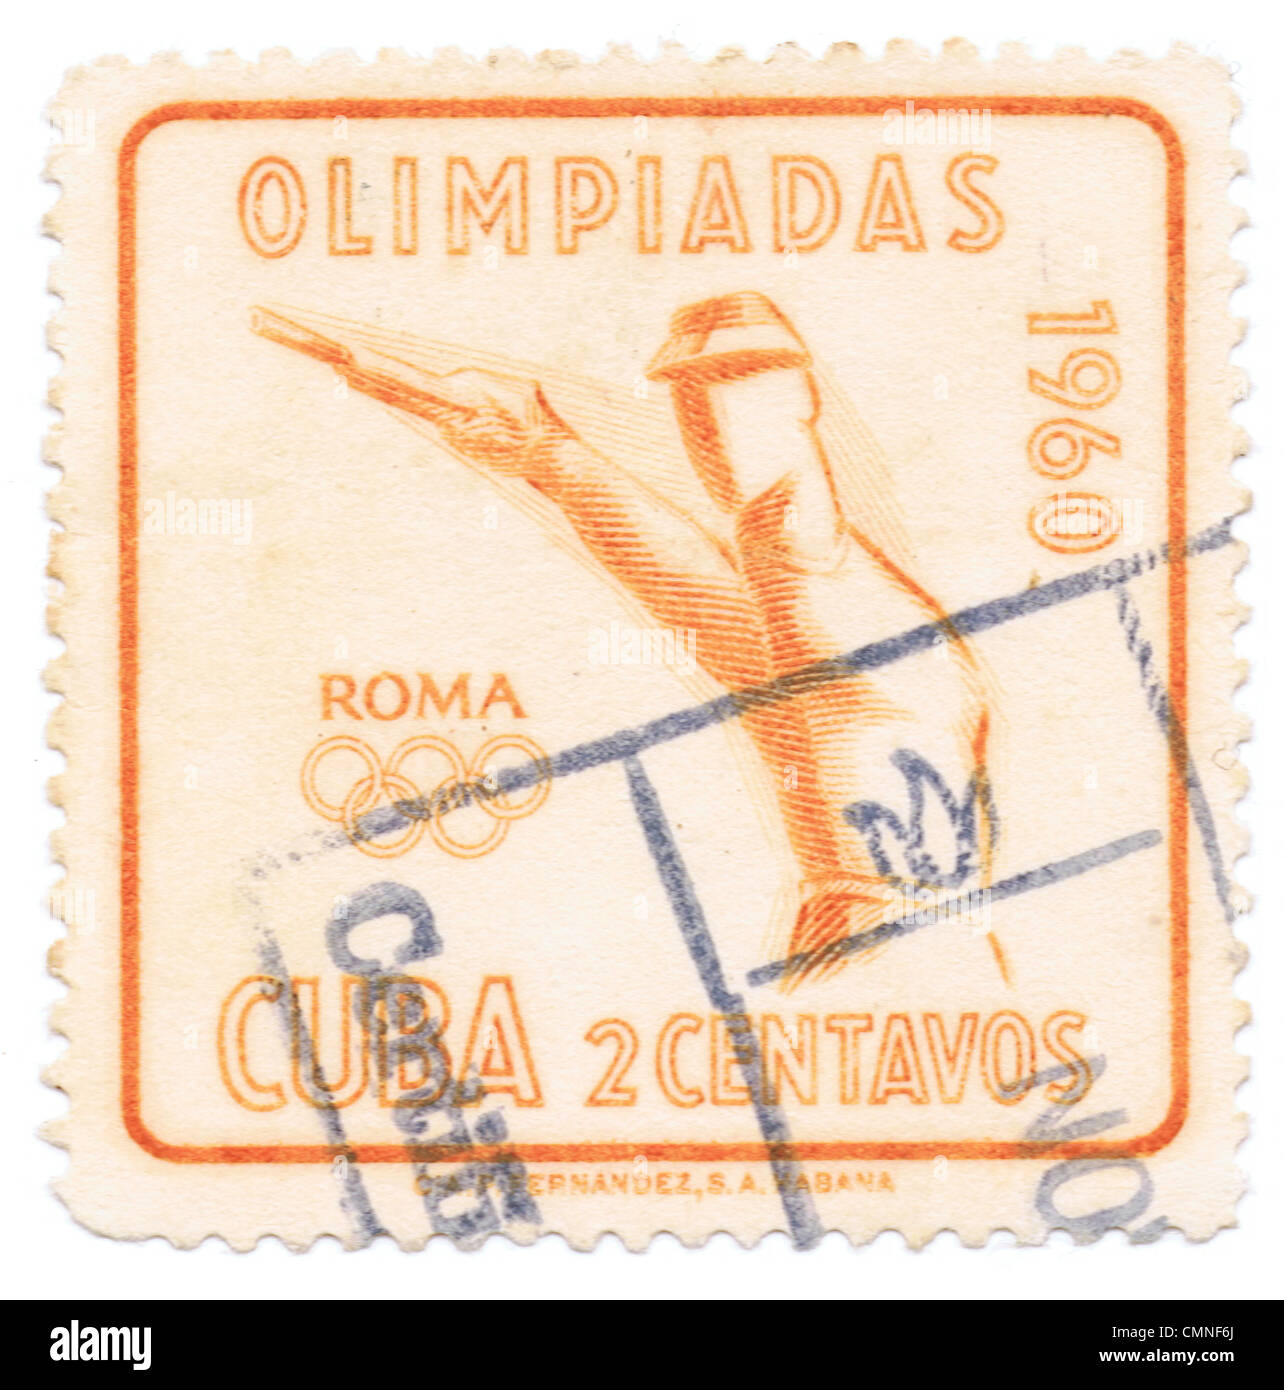 Cuban estampilla conmemorando los Juegos Olímpicos de Verano de 1960, oficialmente conocida como los juegos de la XVII Olimpiada (17ª), fue un evento deportivo internacional celebrado del 25 de agosto al 11 de septiembre de 1960 en Roma, Italia Foto de stock